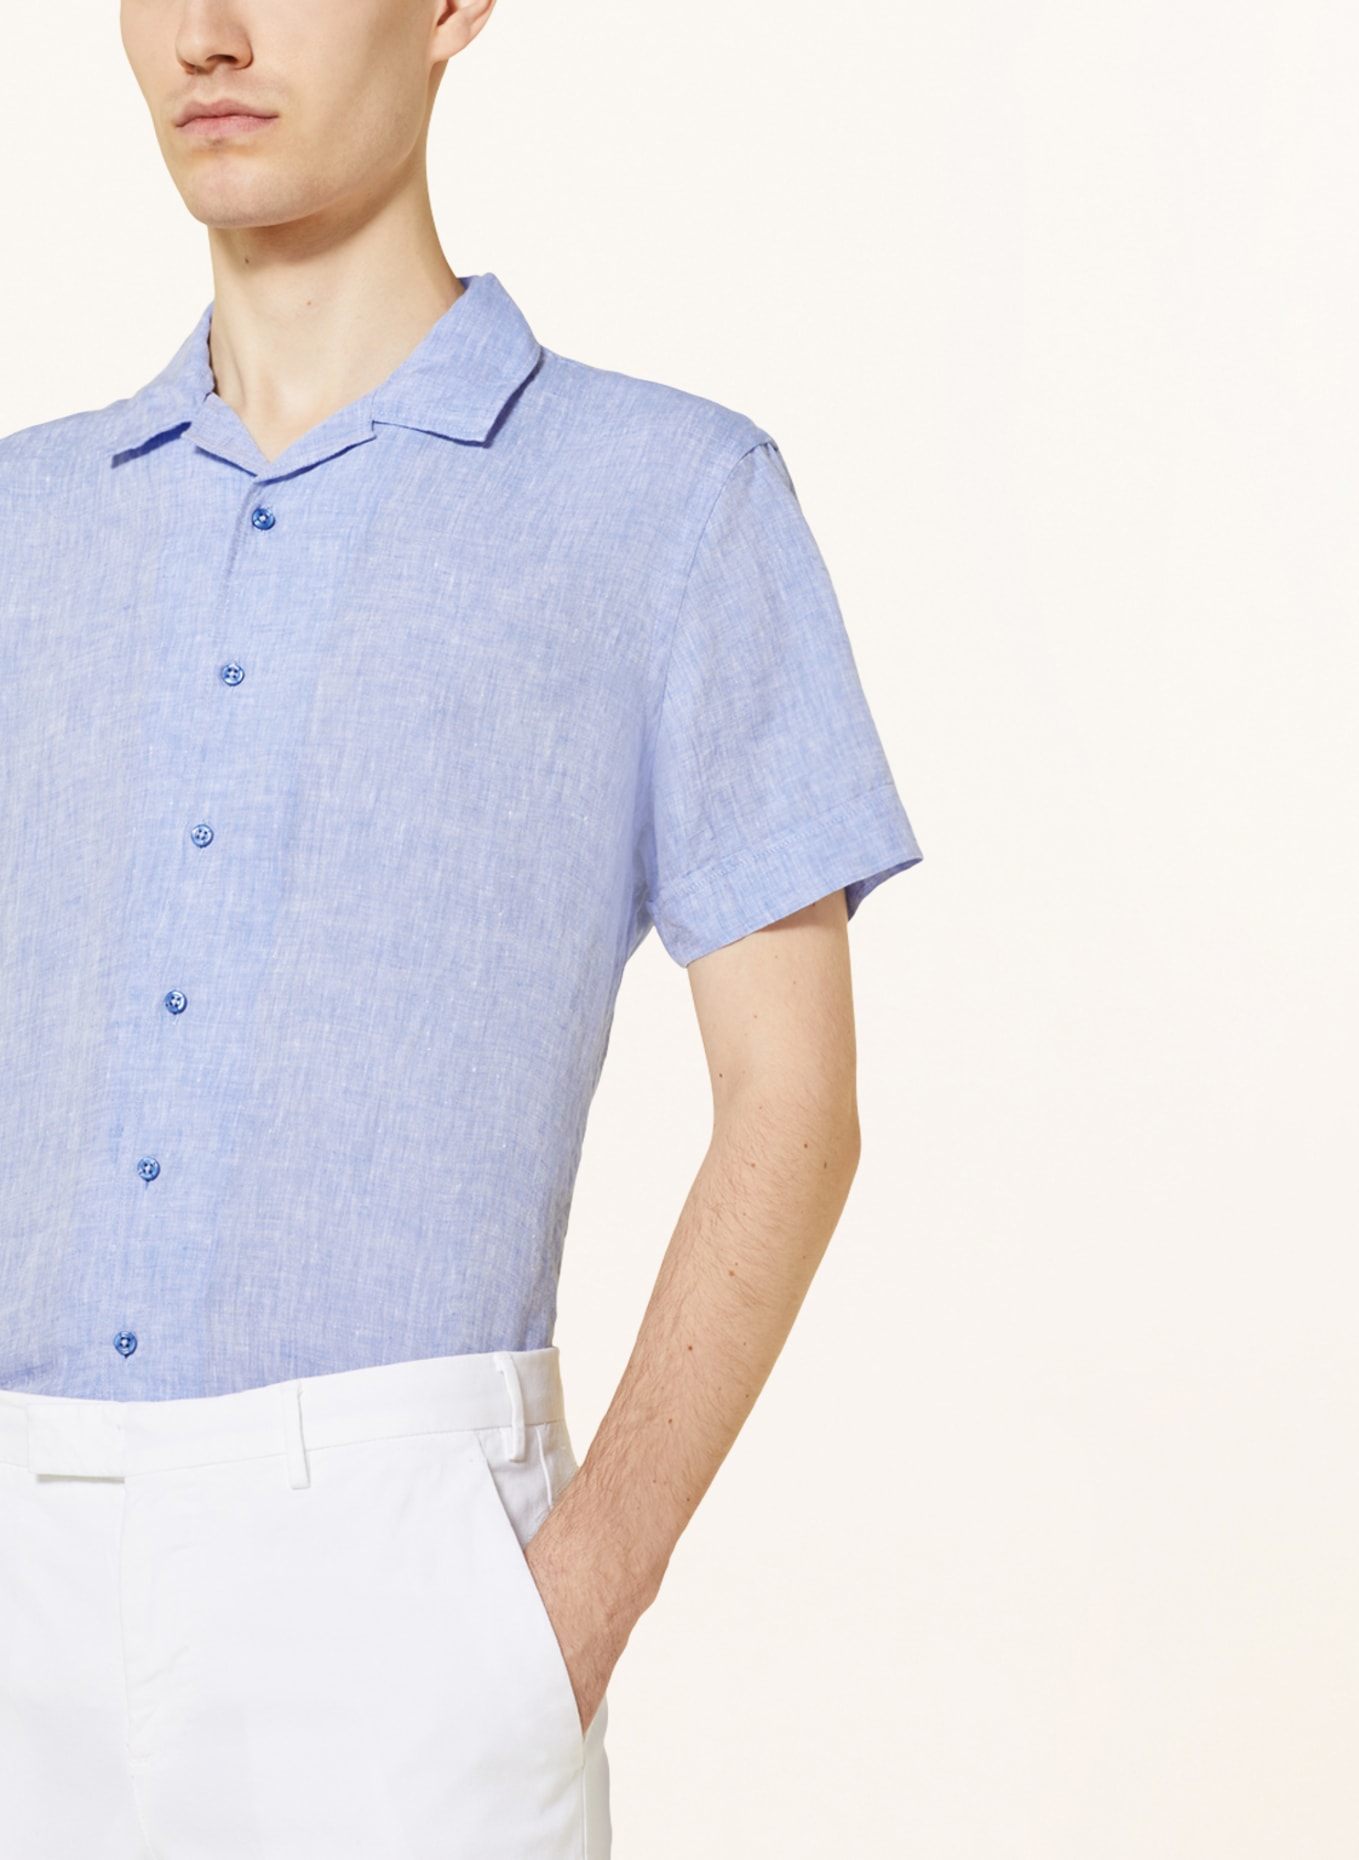 Q1 Manufaktur Short sleeve shirt extra slim fit made of linen, Color: LIGHT BLUE (Image 4)